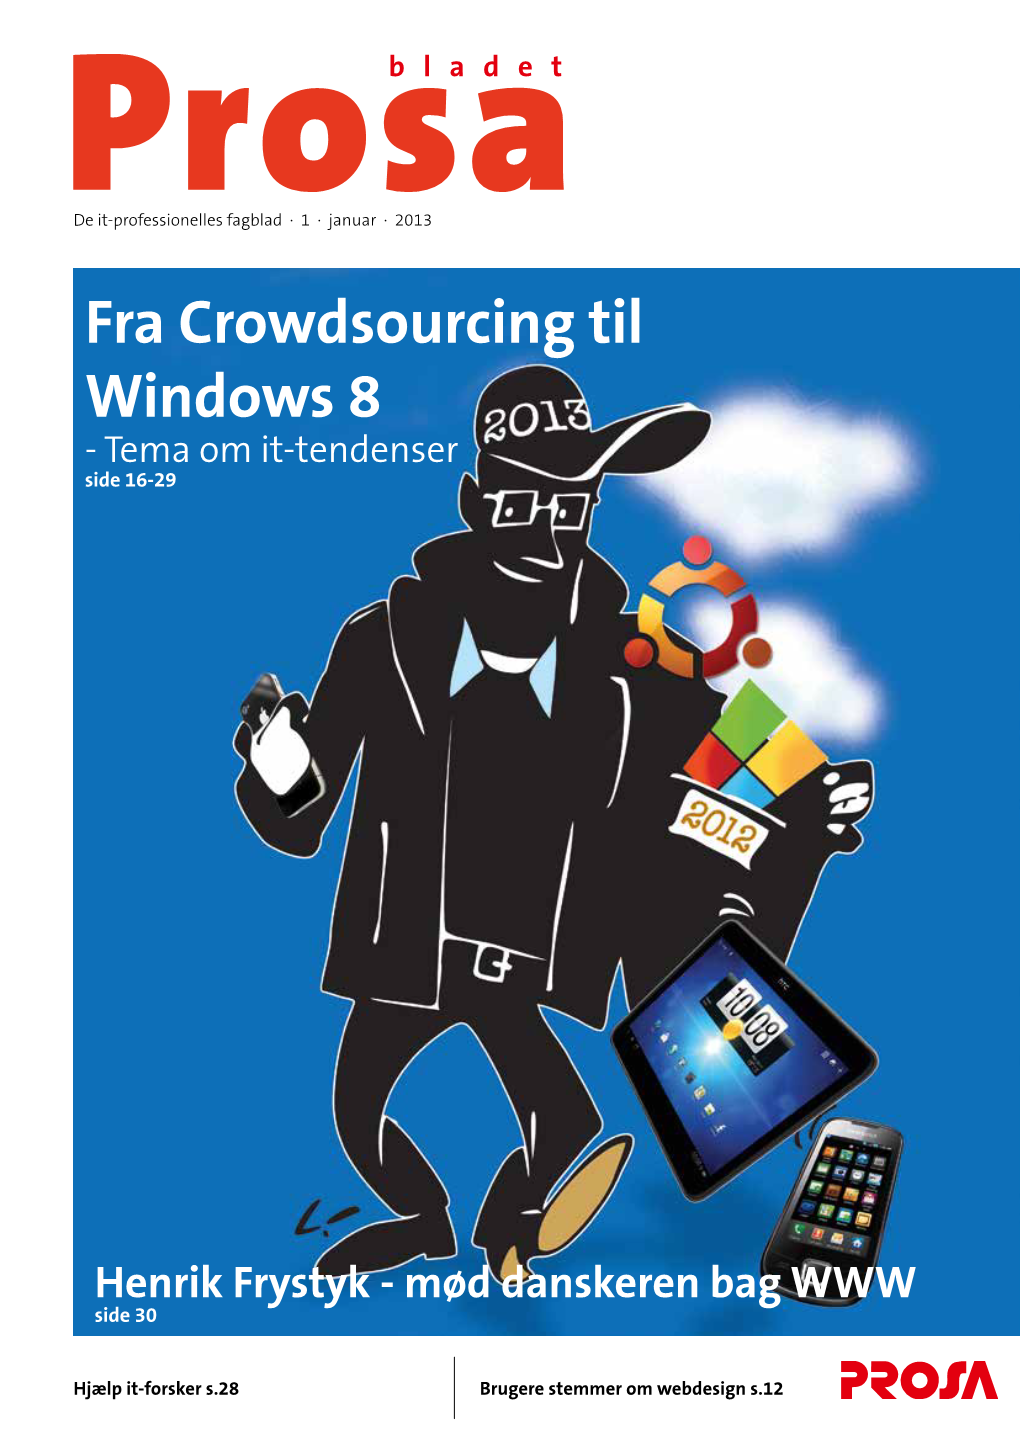 Fra Crowdsourcing Til Windows 8 - Tema Om It-Tendenser Side 16-29